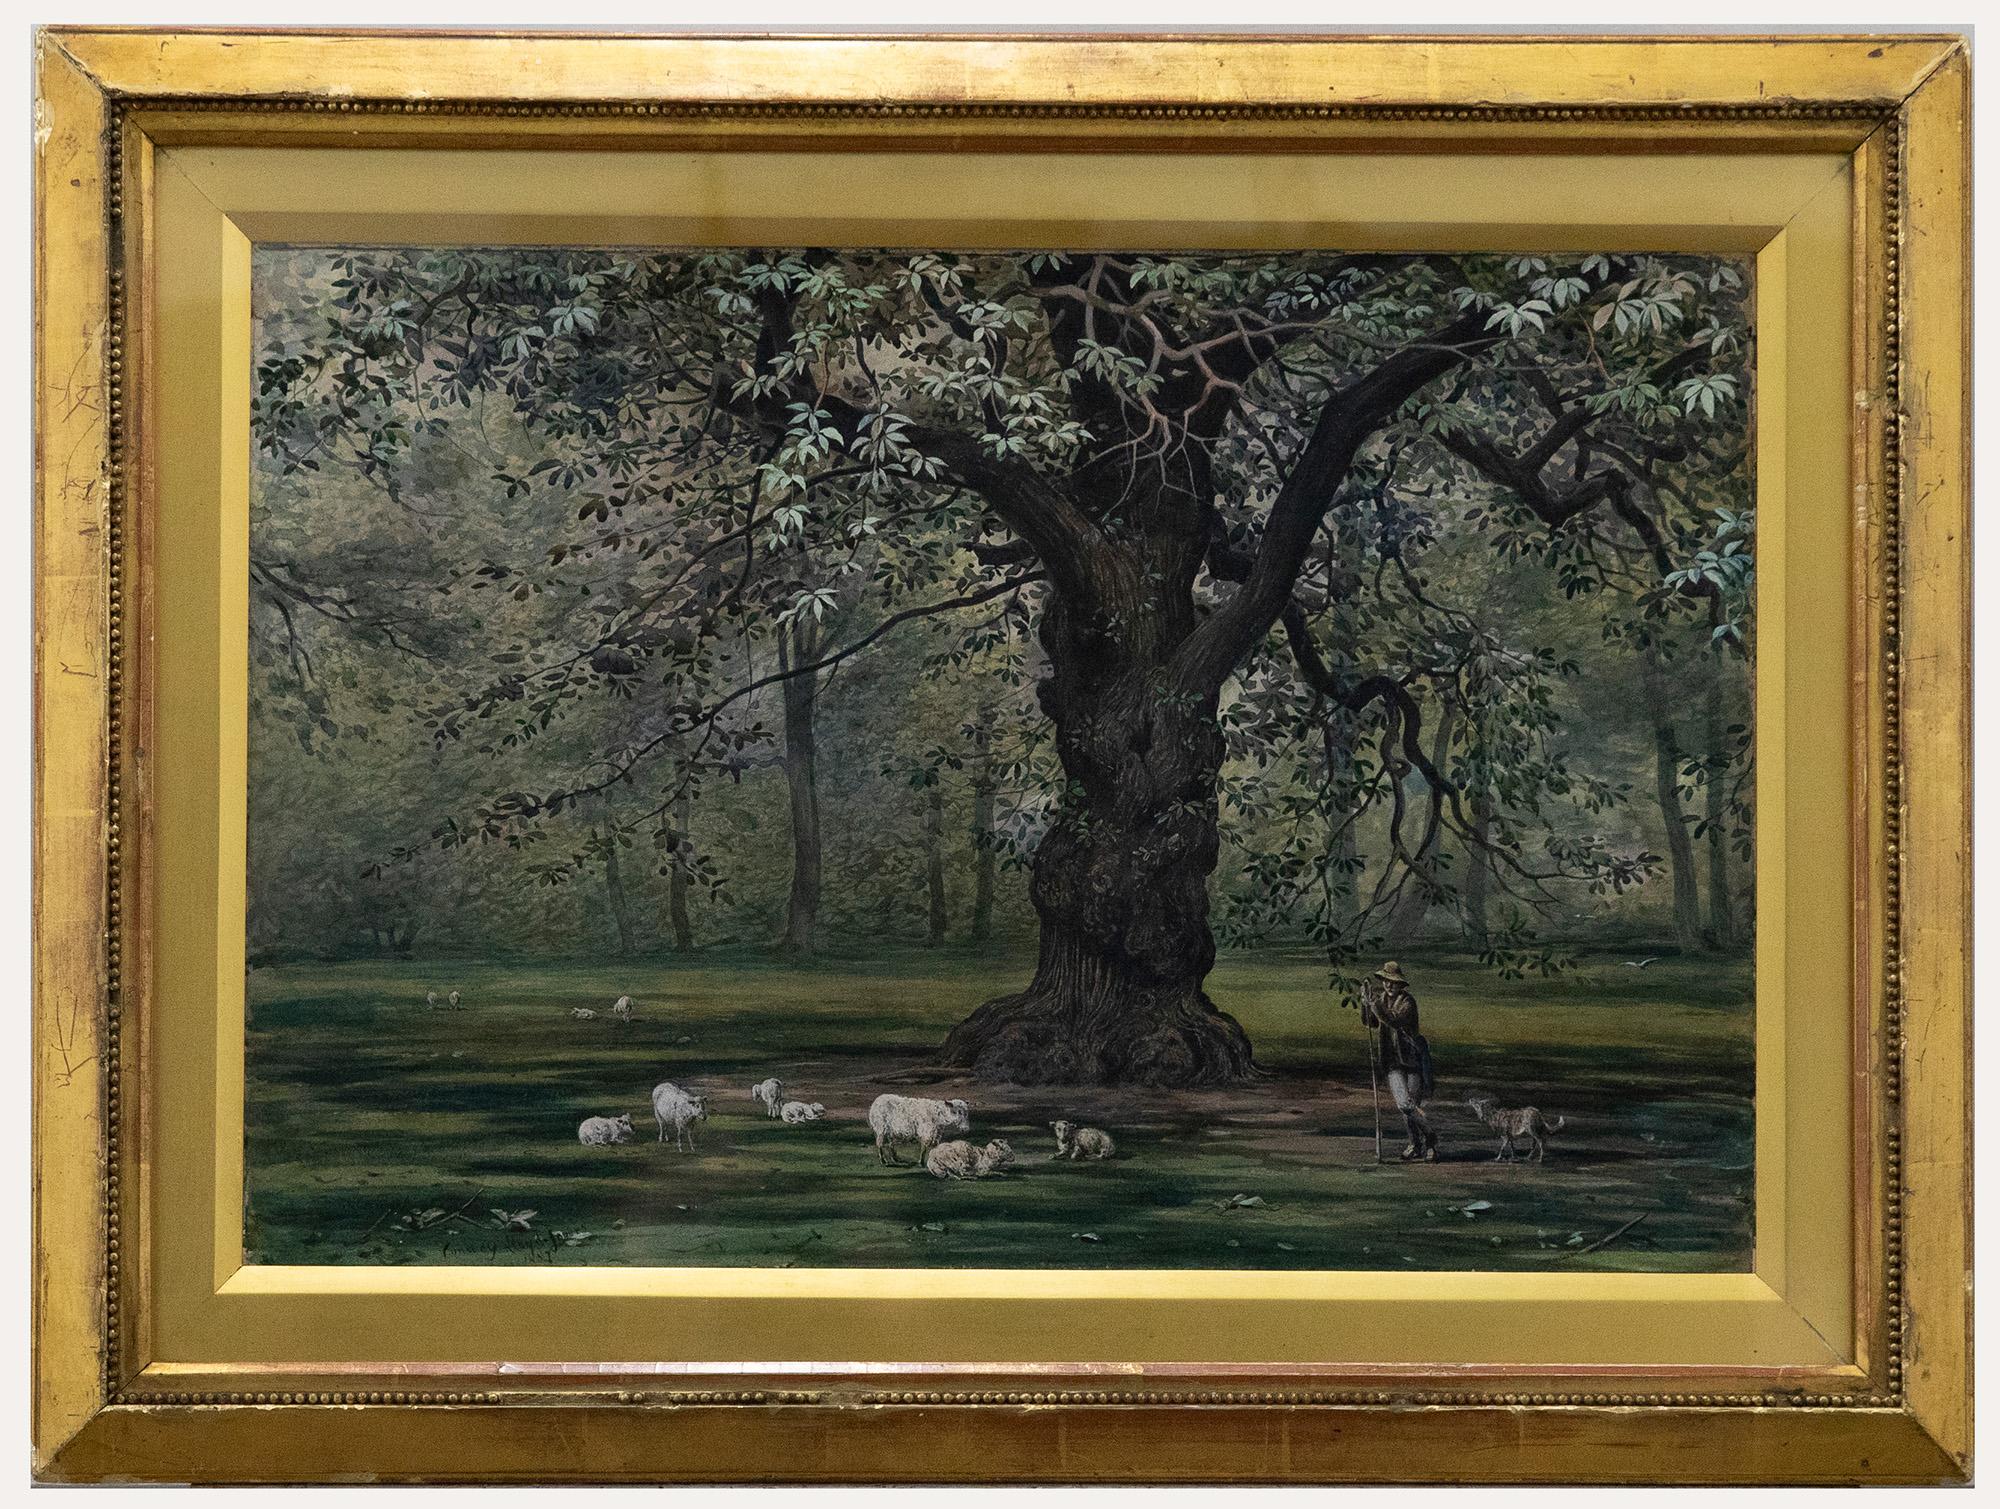 Unknown Landscape Art – Conway Lloyd Jones (1846-1897) - 1881 Aquarell, Hirte und Uhr, Shepherd & Uhr